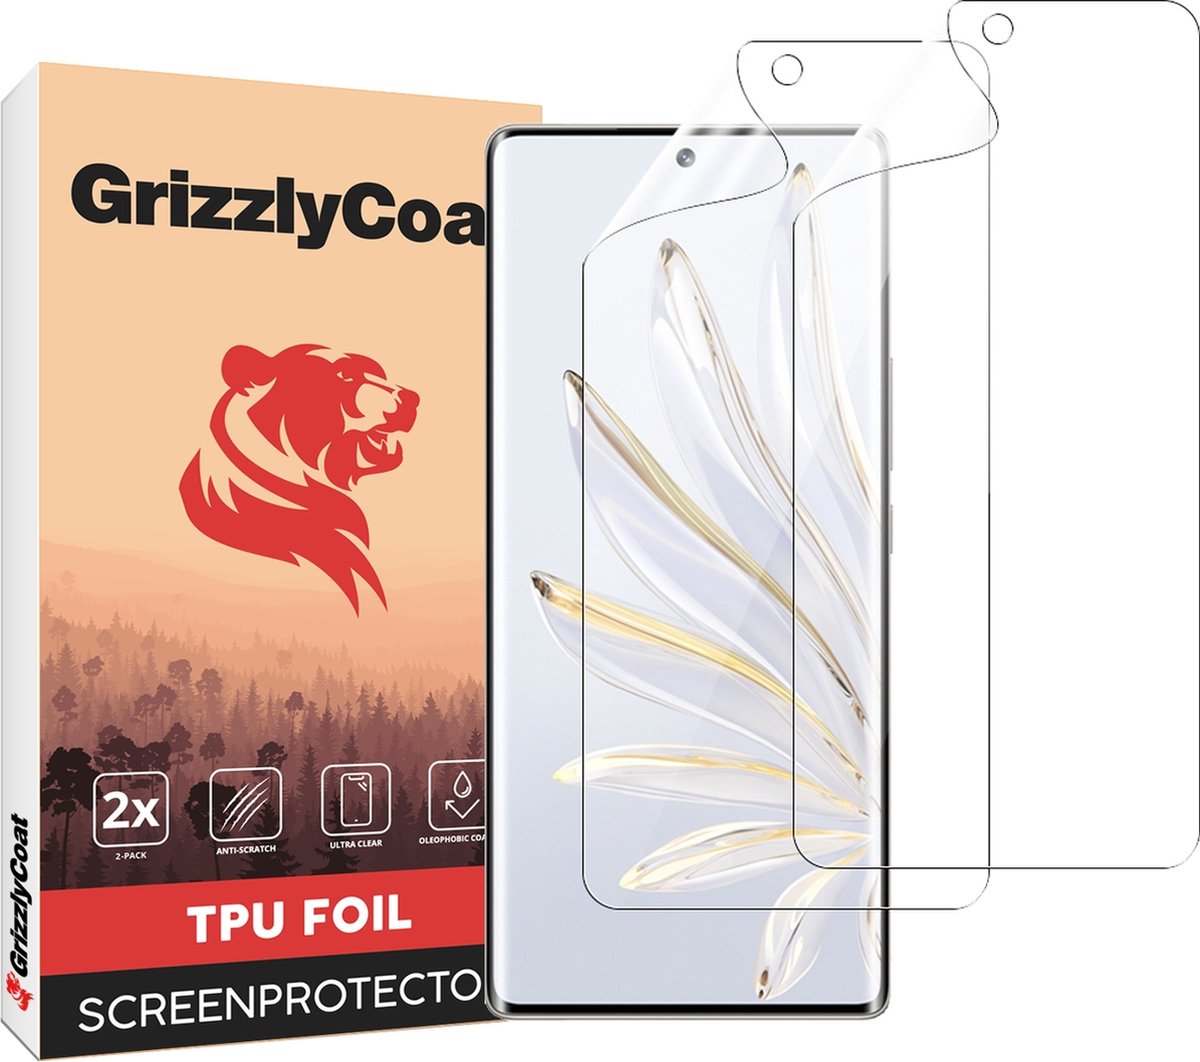 GrizzlyCoat - Screenprotector geschikt voor HONOR 70 Hydrogel TPU | GrizzlyCoat Screenprotector - Case Friendly + Installatie Frame (2-Pack)